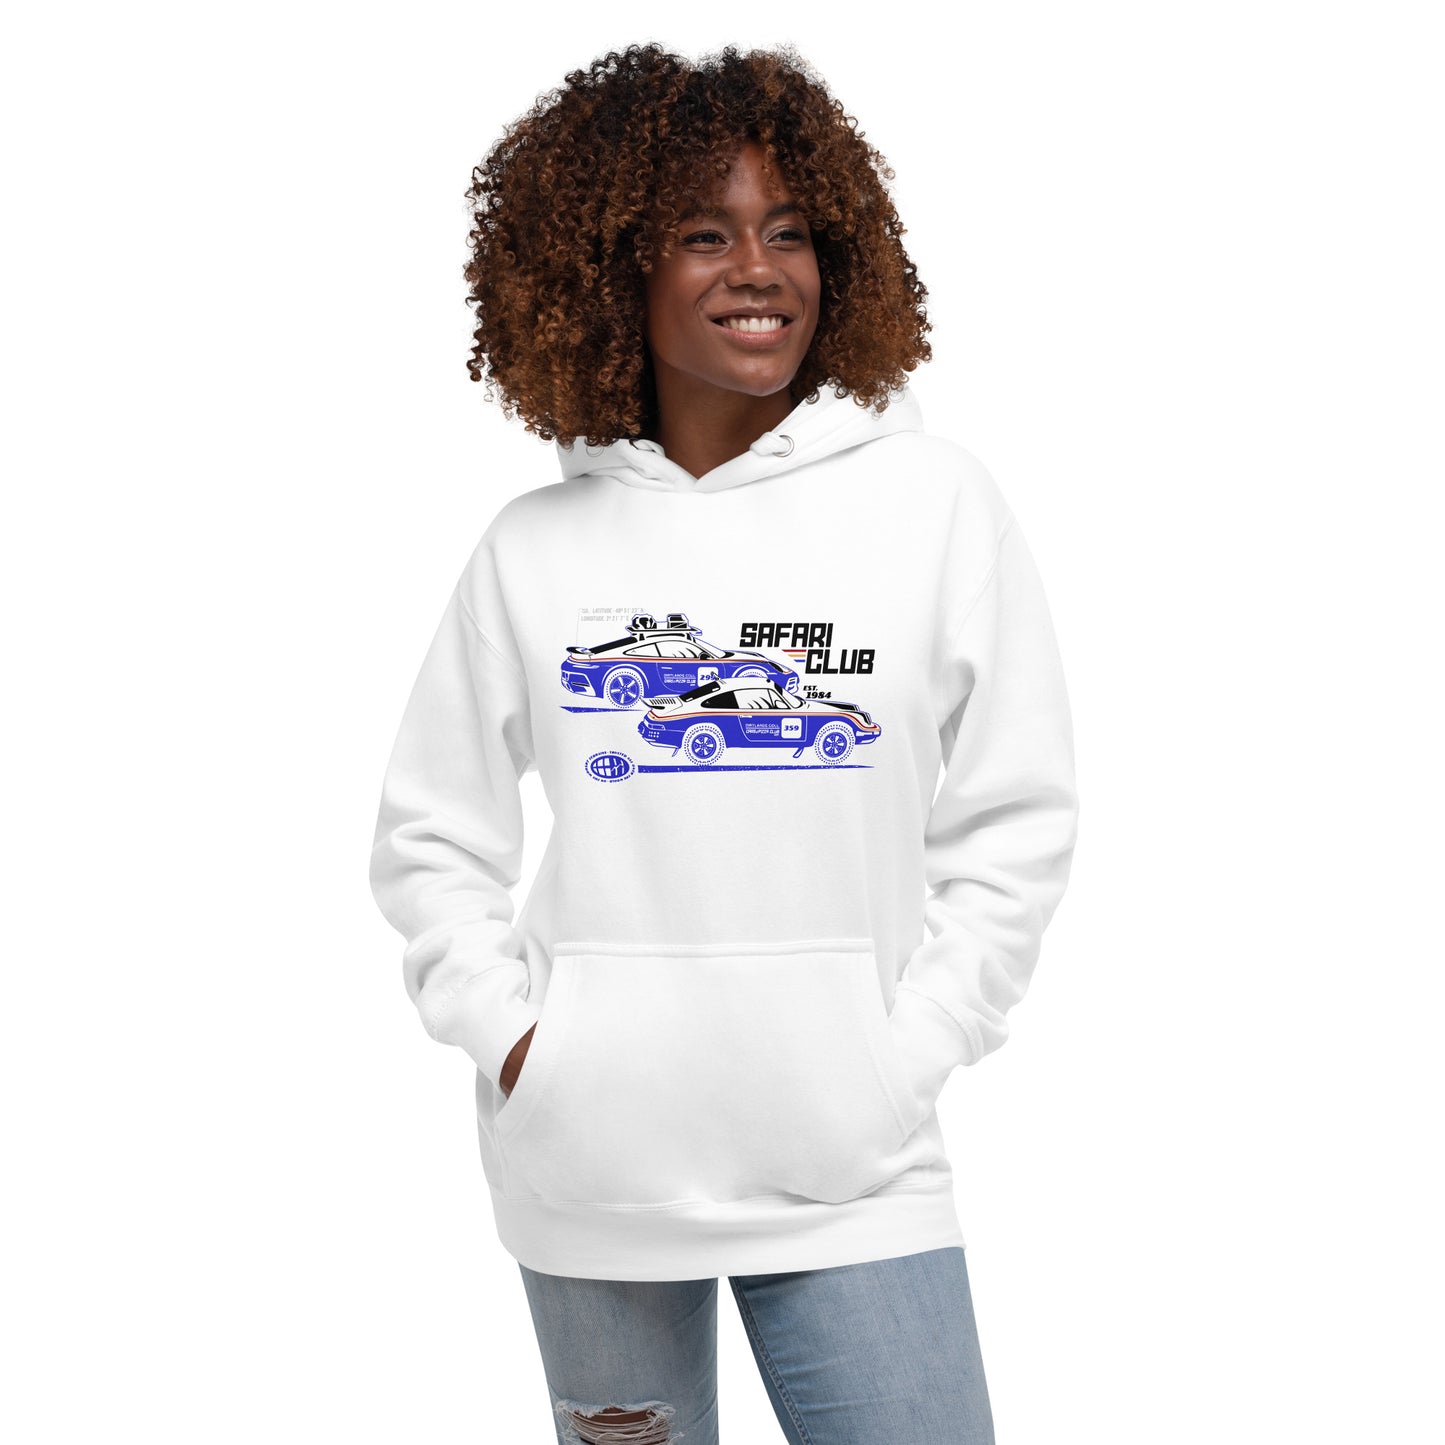 "Safari Club" unisex hooded sweatshirt